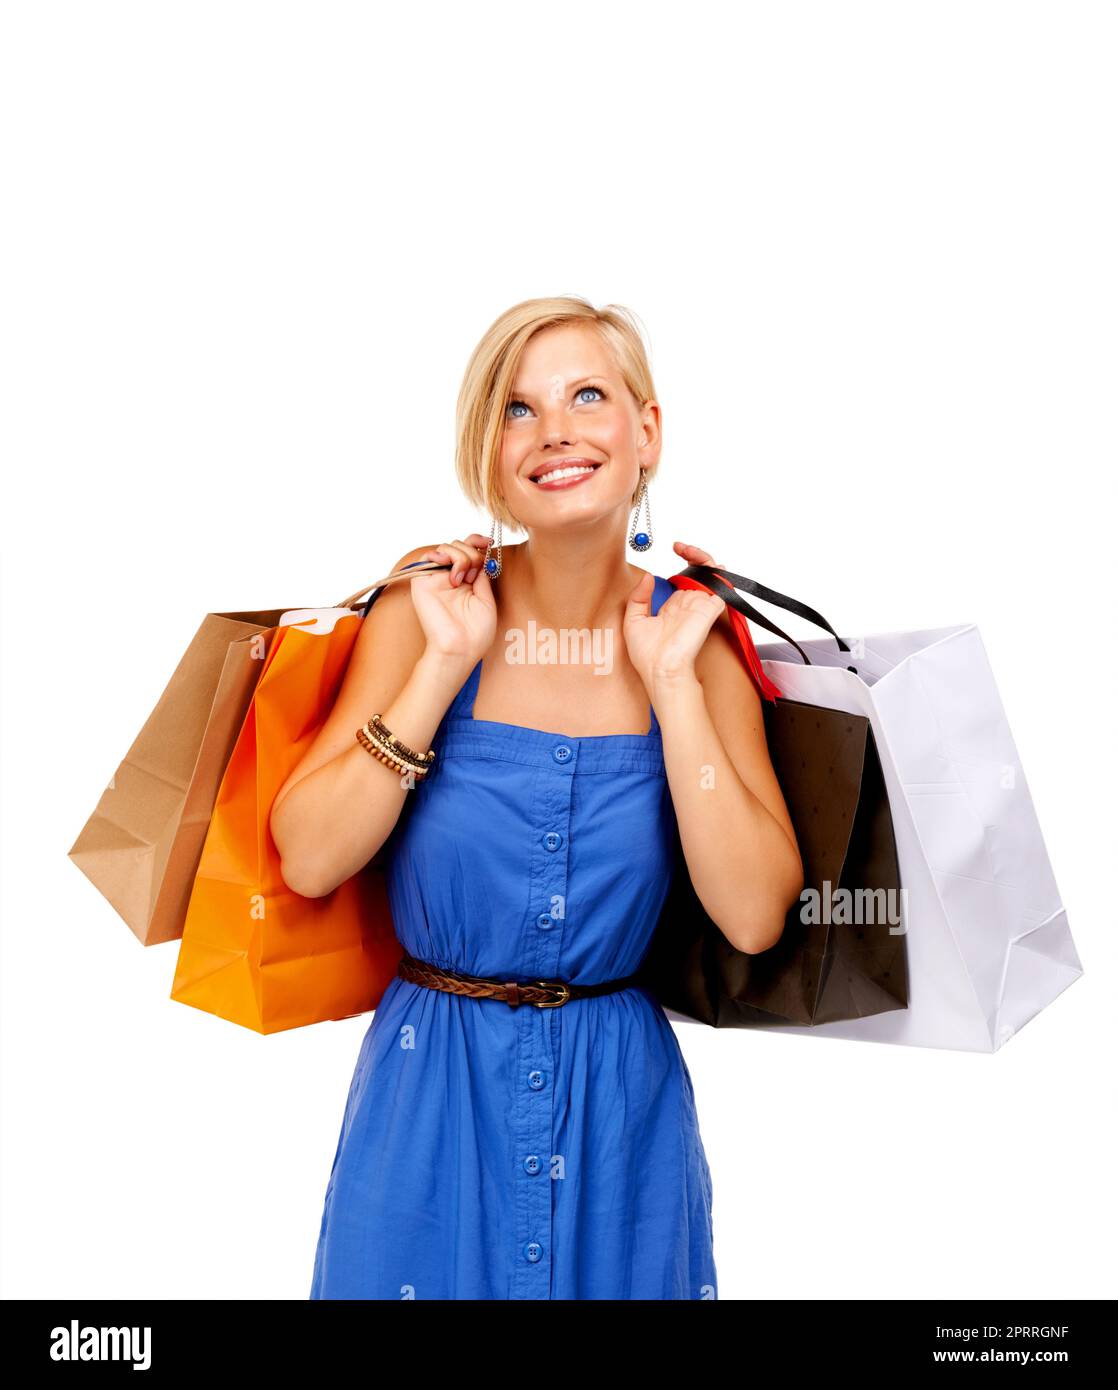 So viele Verkäufe, so wenig Zeit. Eine attraktive junge Frau mit einem Haufen Einkaufstaschen. Stockfoto